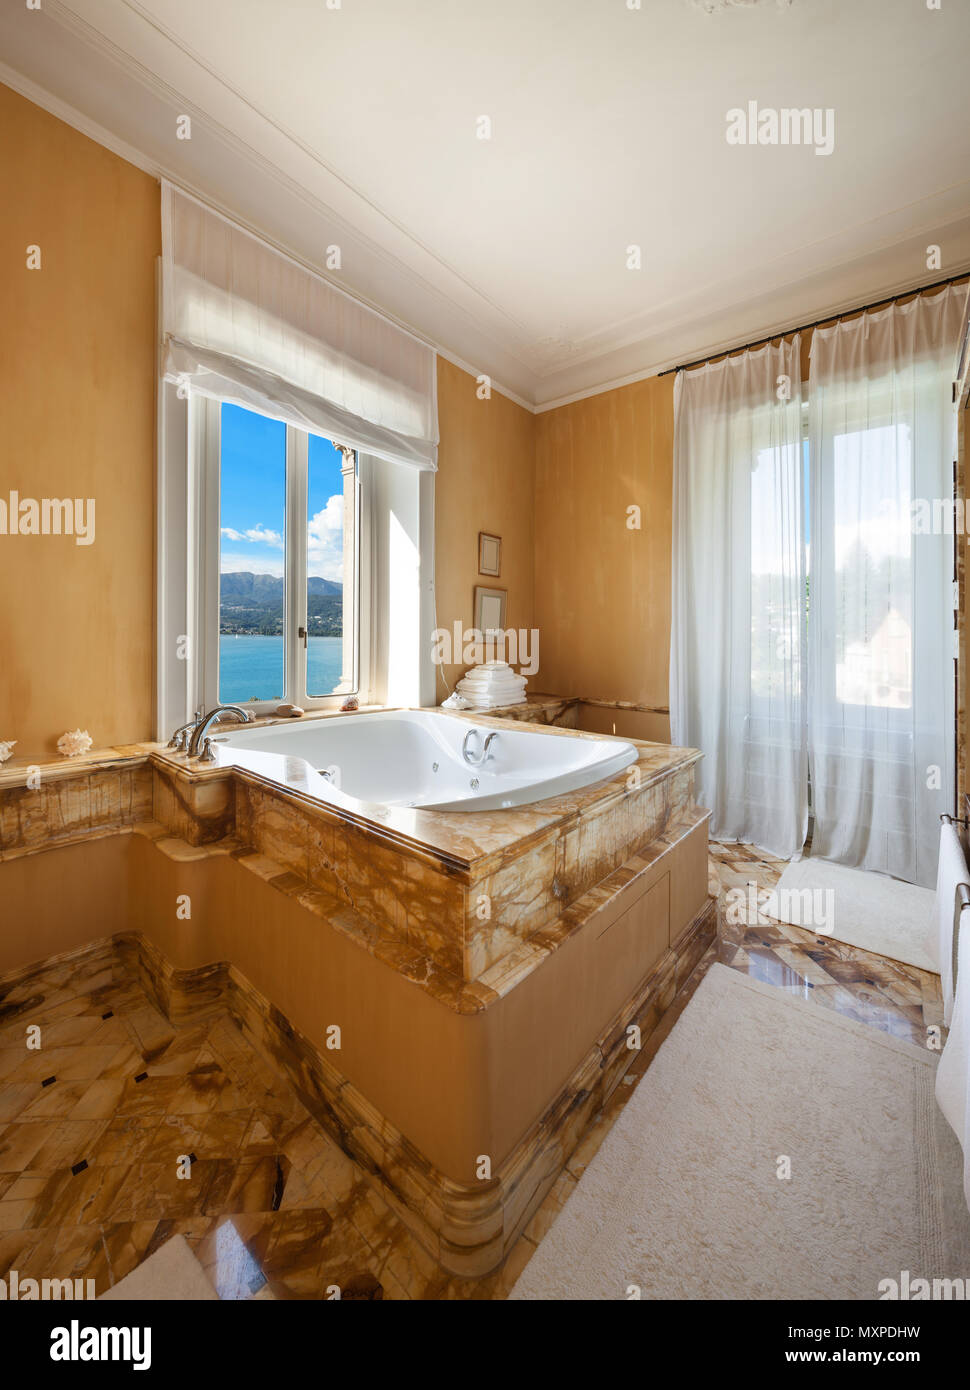 Intérieur d'un hôtel particulier de luxe, très belle salle de bains avec jacuzzi Banque D'Images